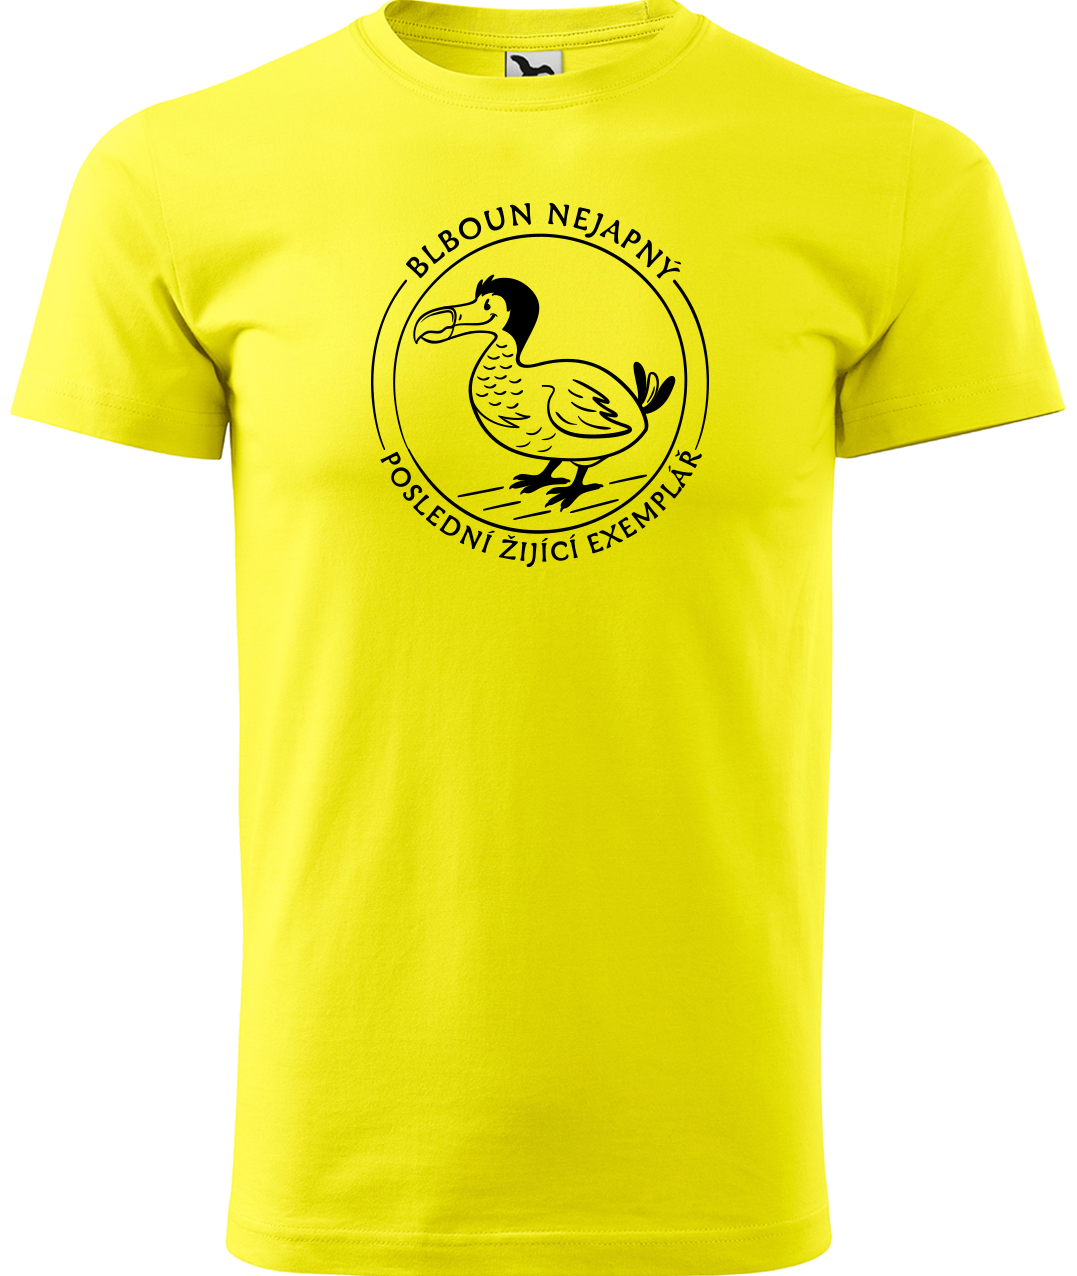 Vtipné tričko - Blboun nejapný Velikost: 2XL, Barva: Žlutá (04)